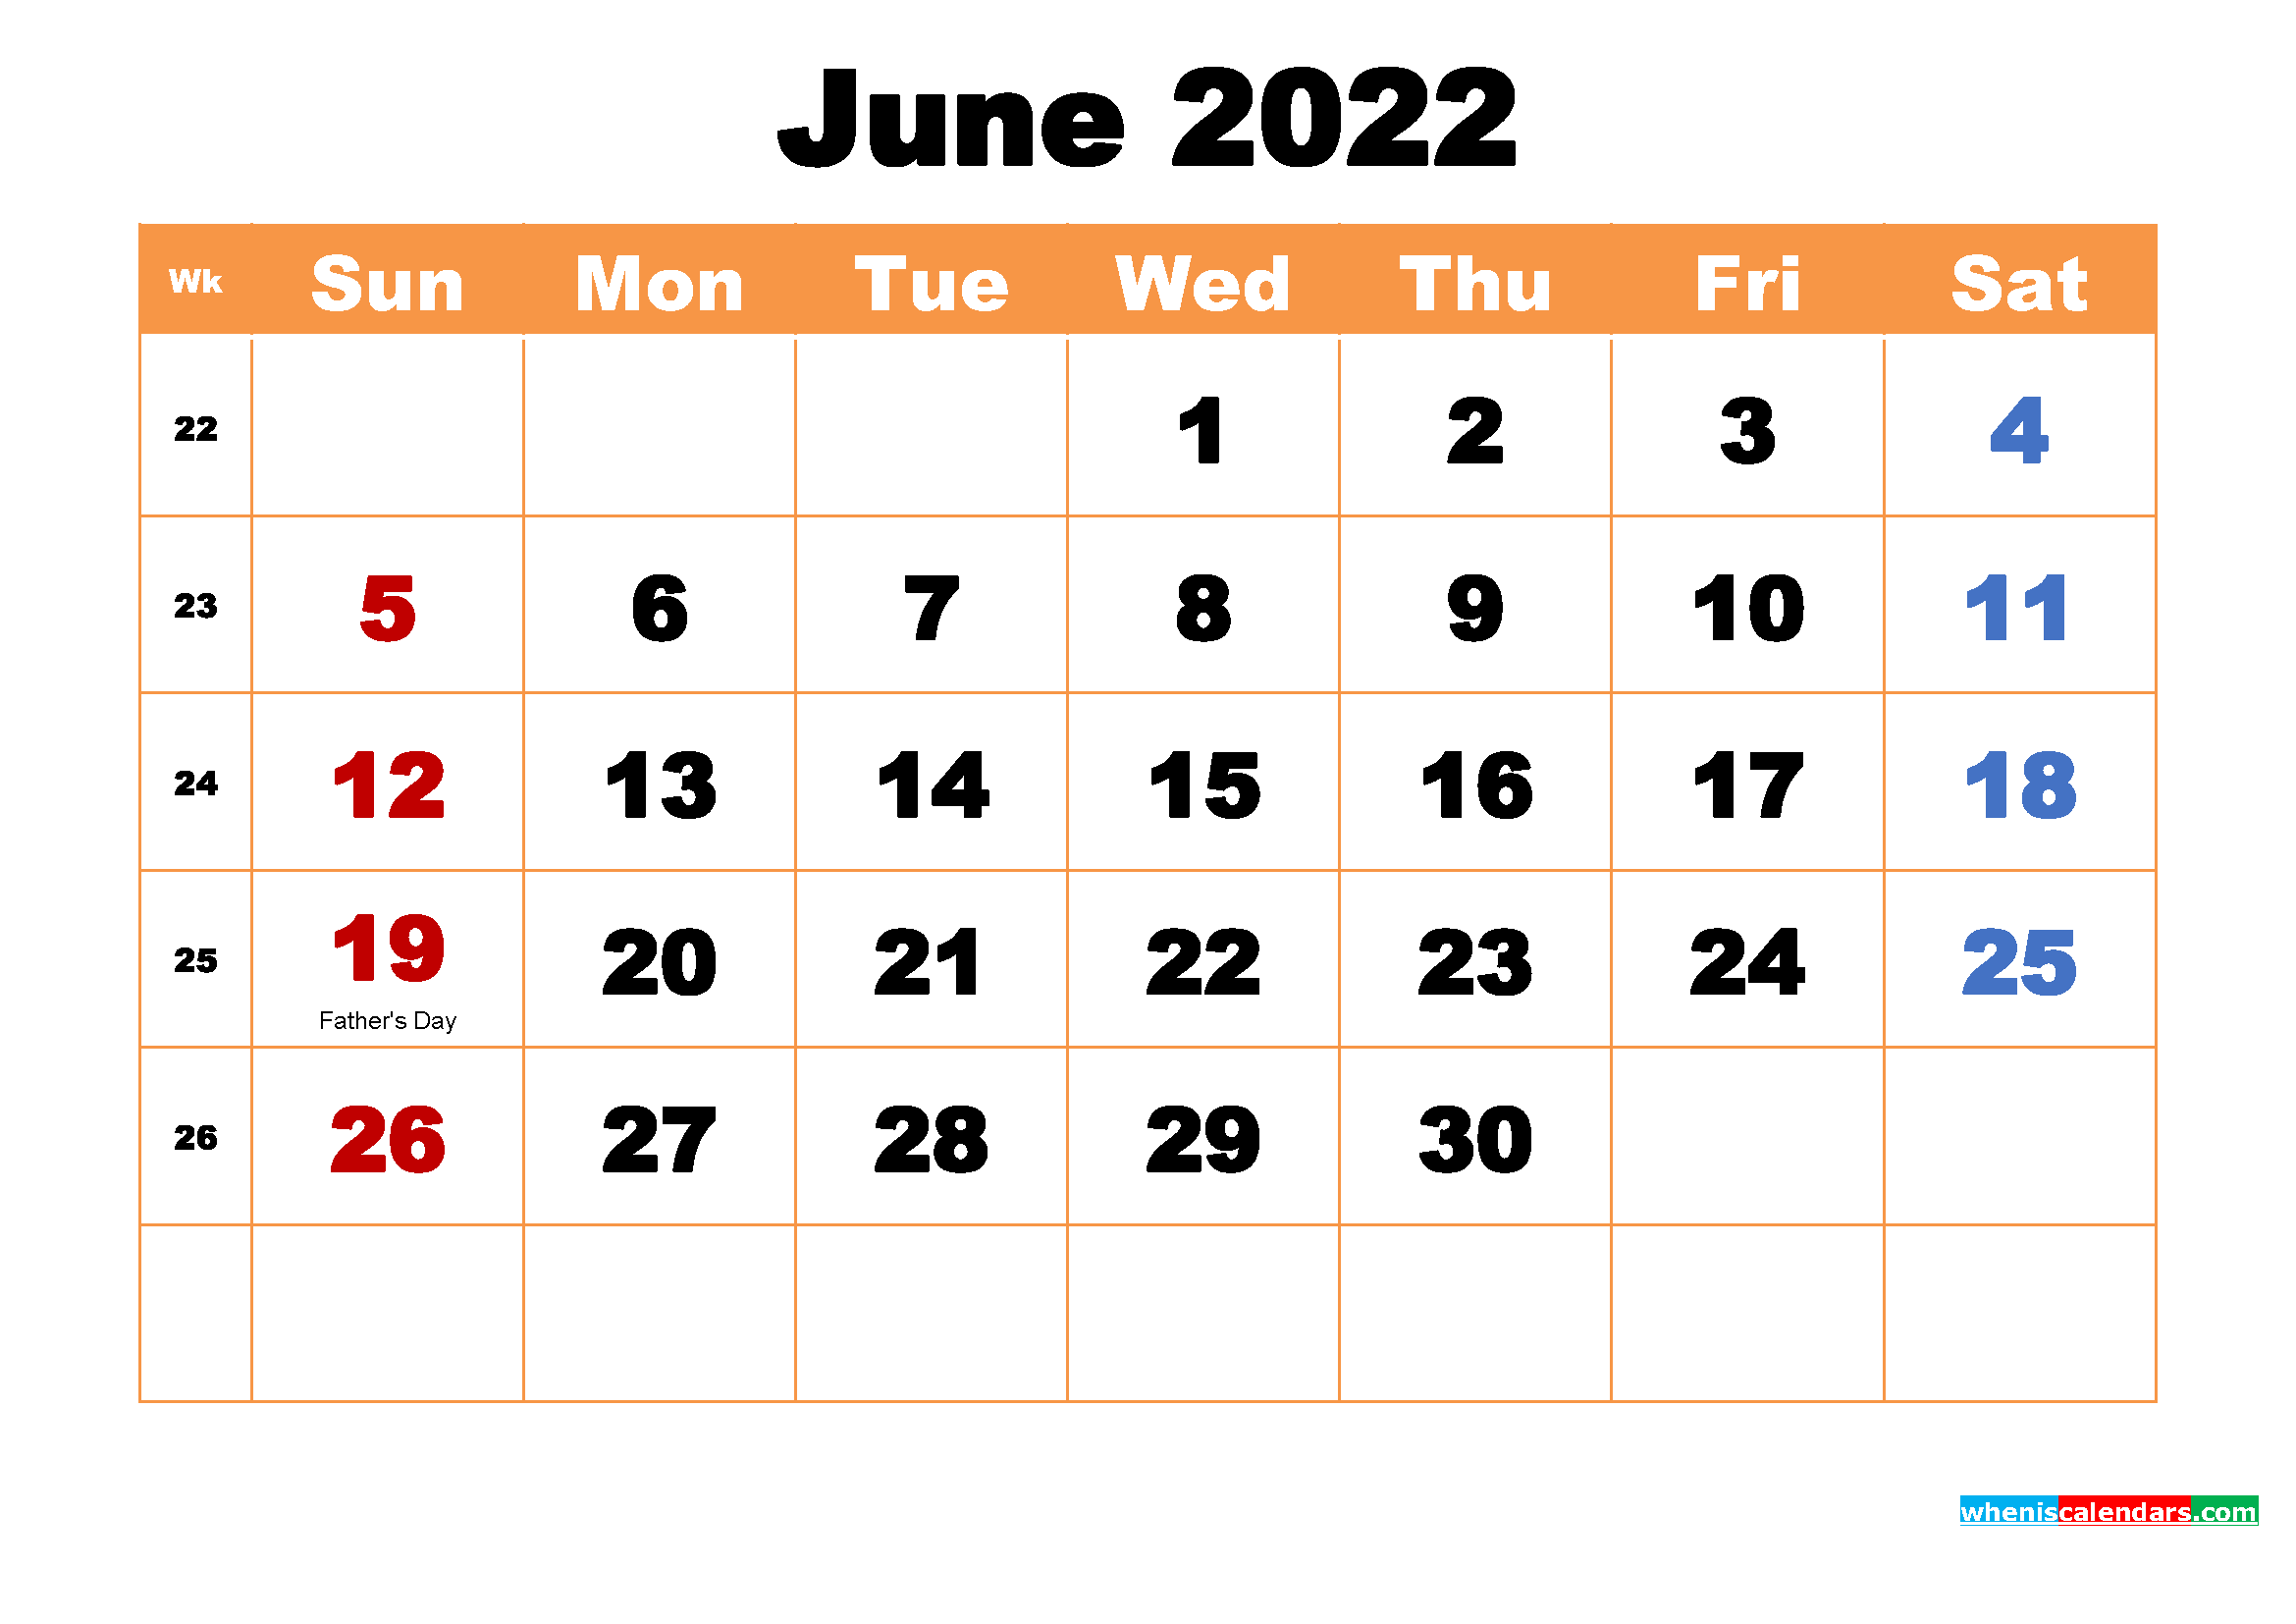 June 2022 Calendar Wallpapers High Resolution